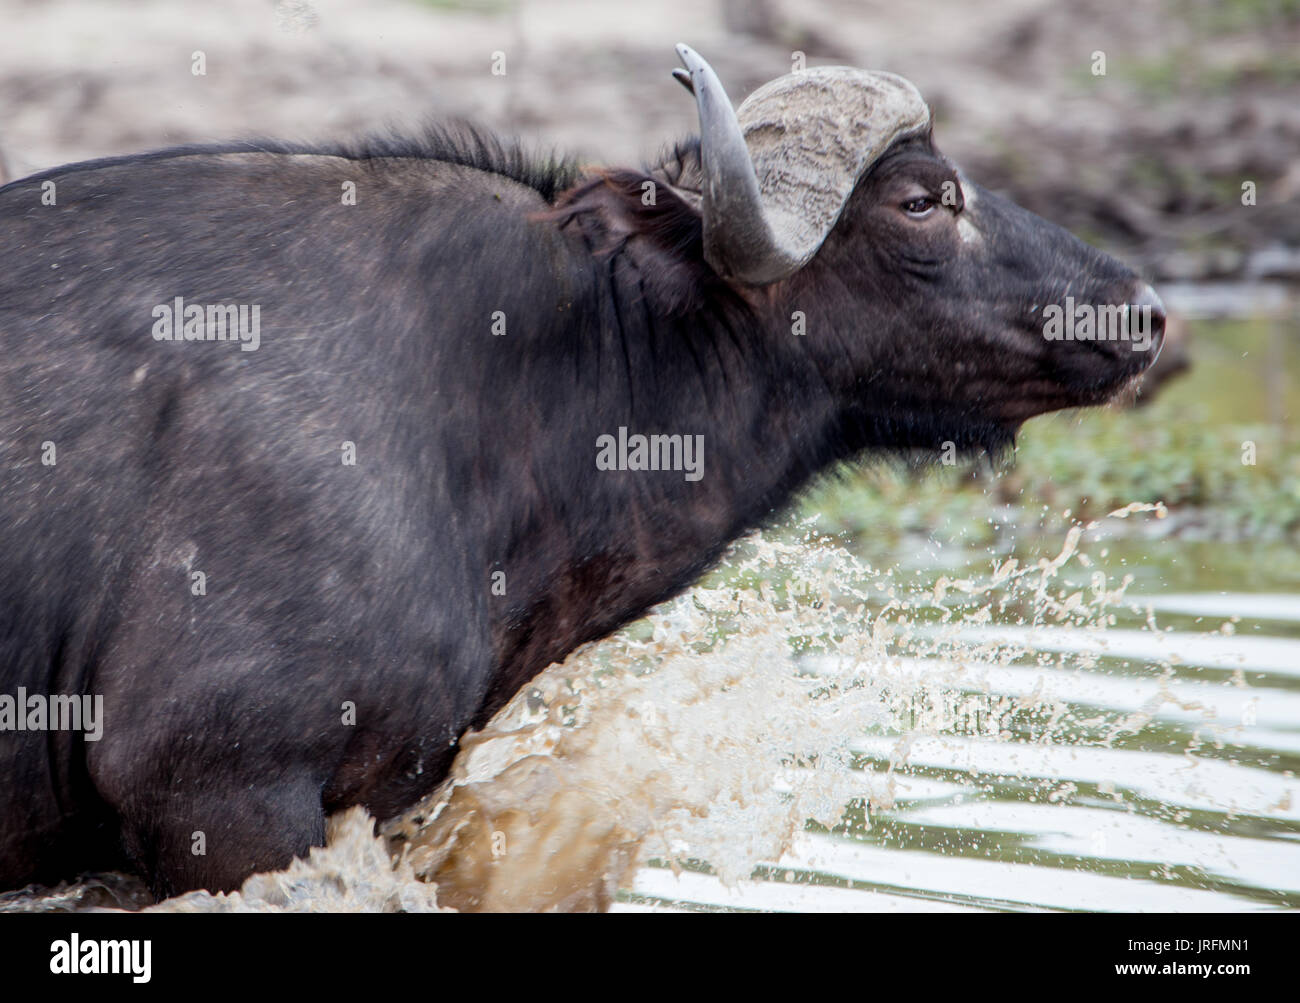 El búfalo africano ejecuta a través del agua Foto de stock